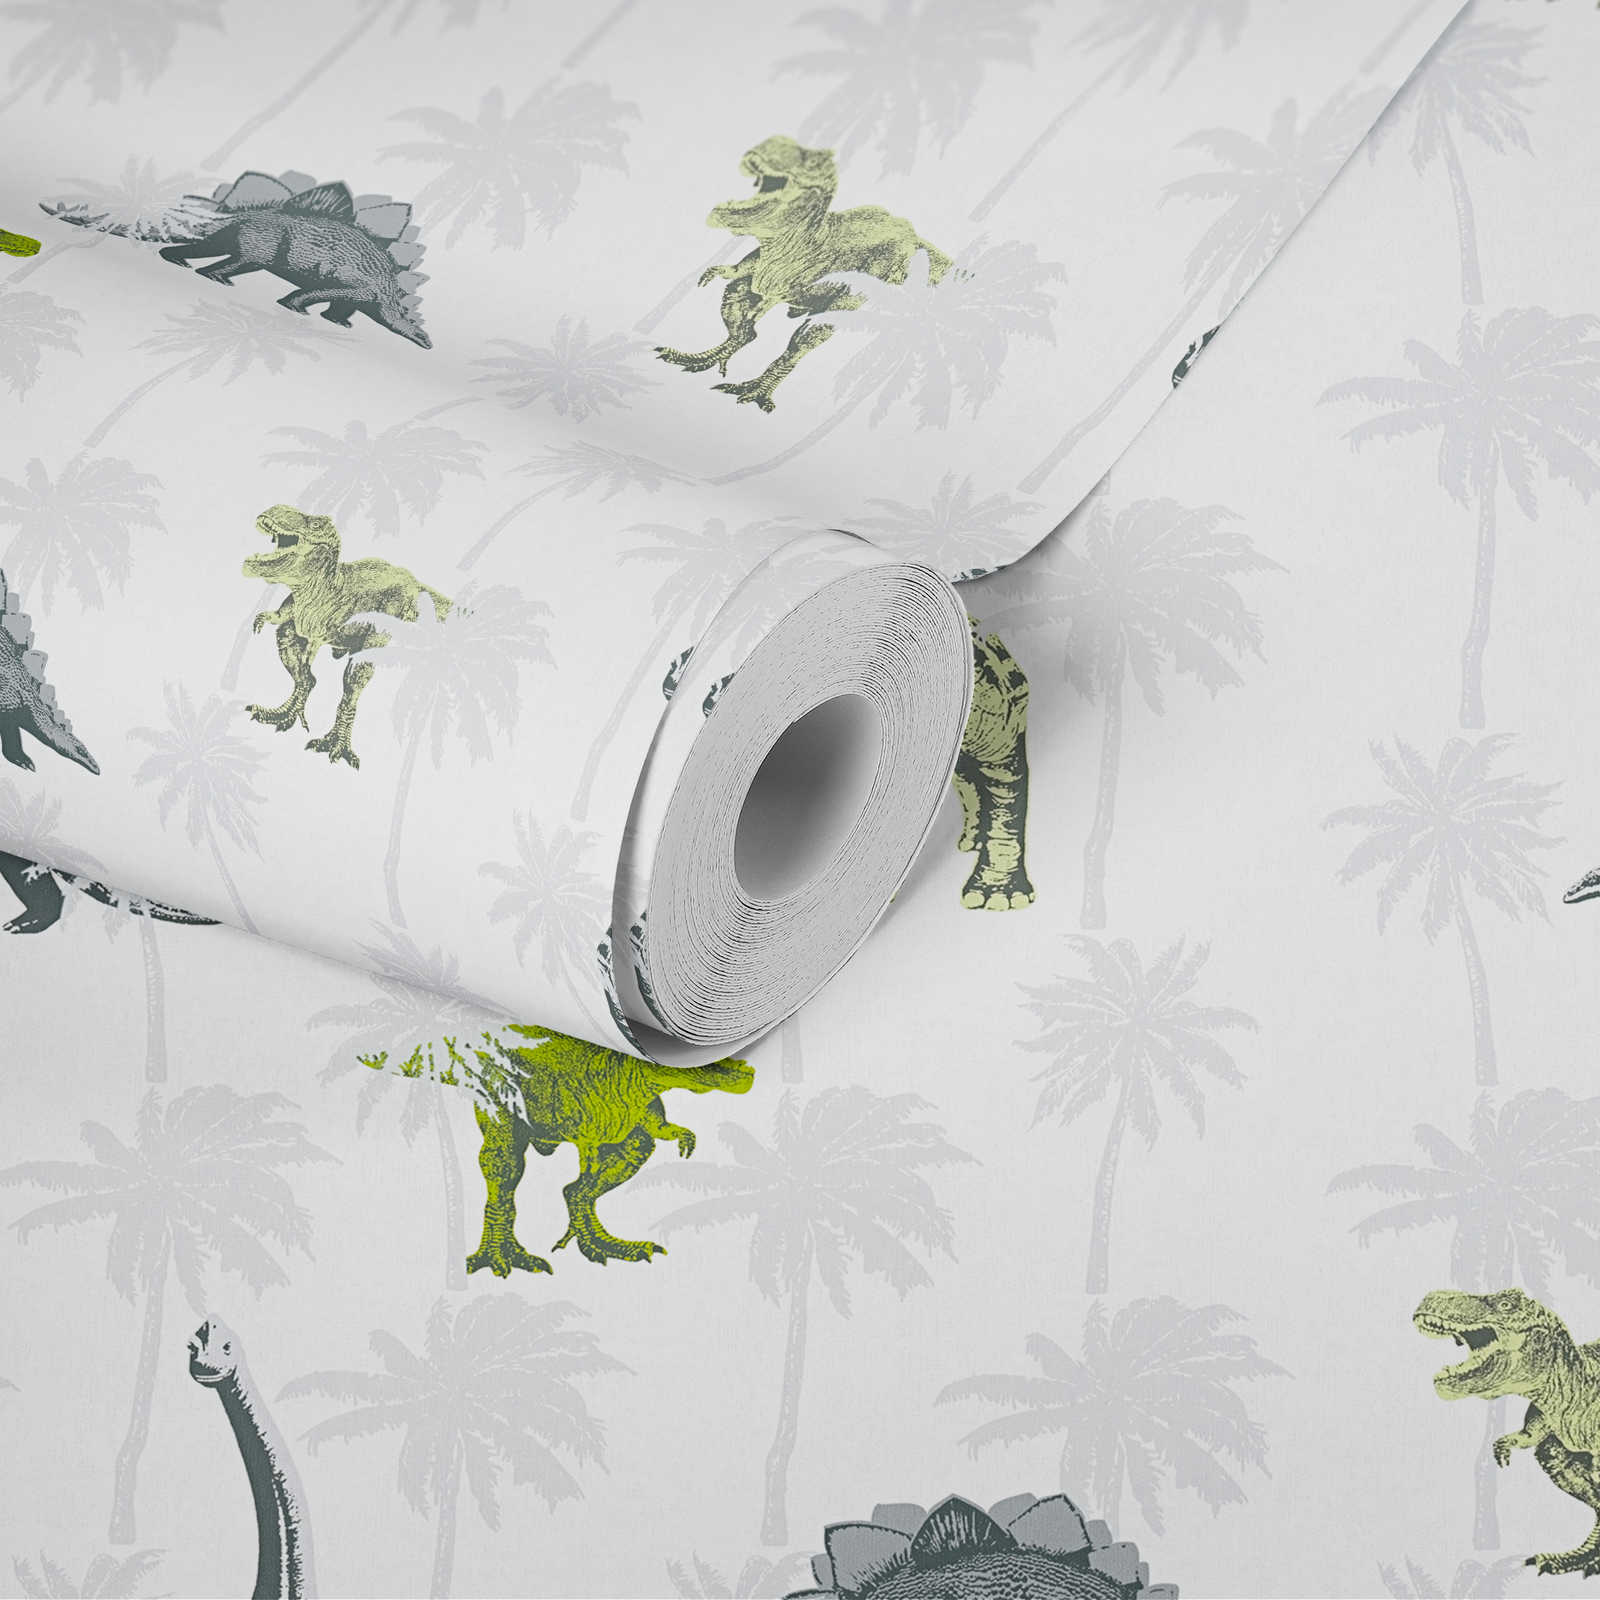             Kinderzimmer Tapete Dinosaurier für Jungen – Grau, Grün
        